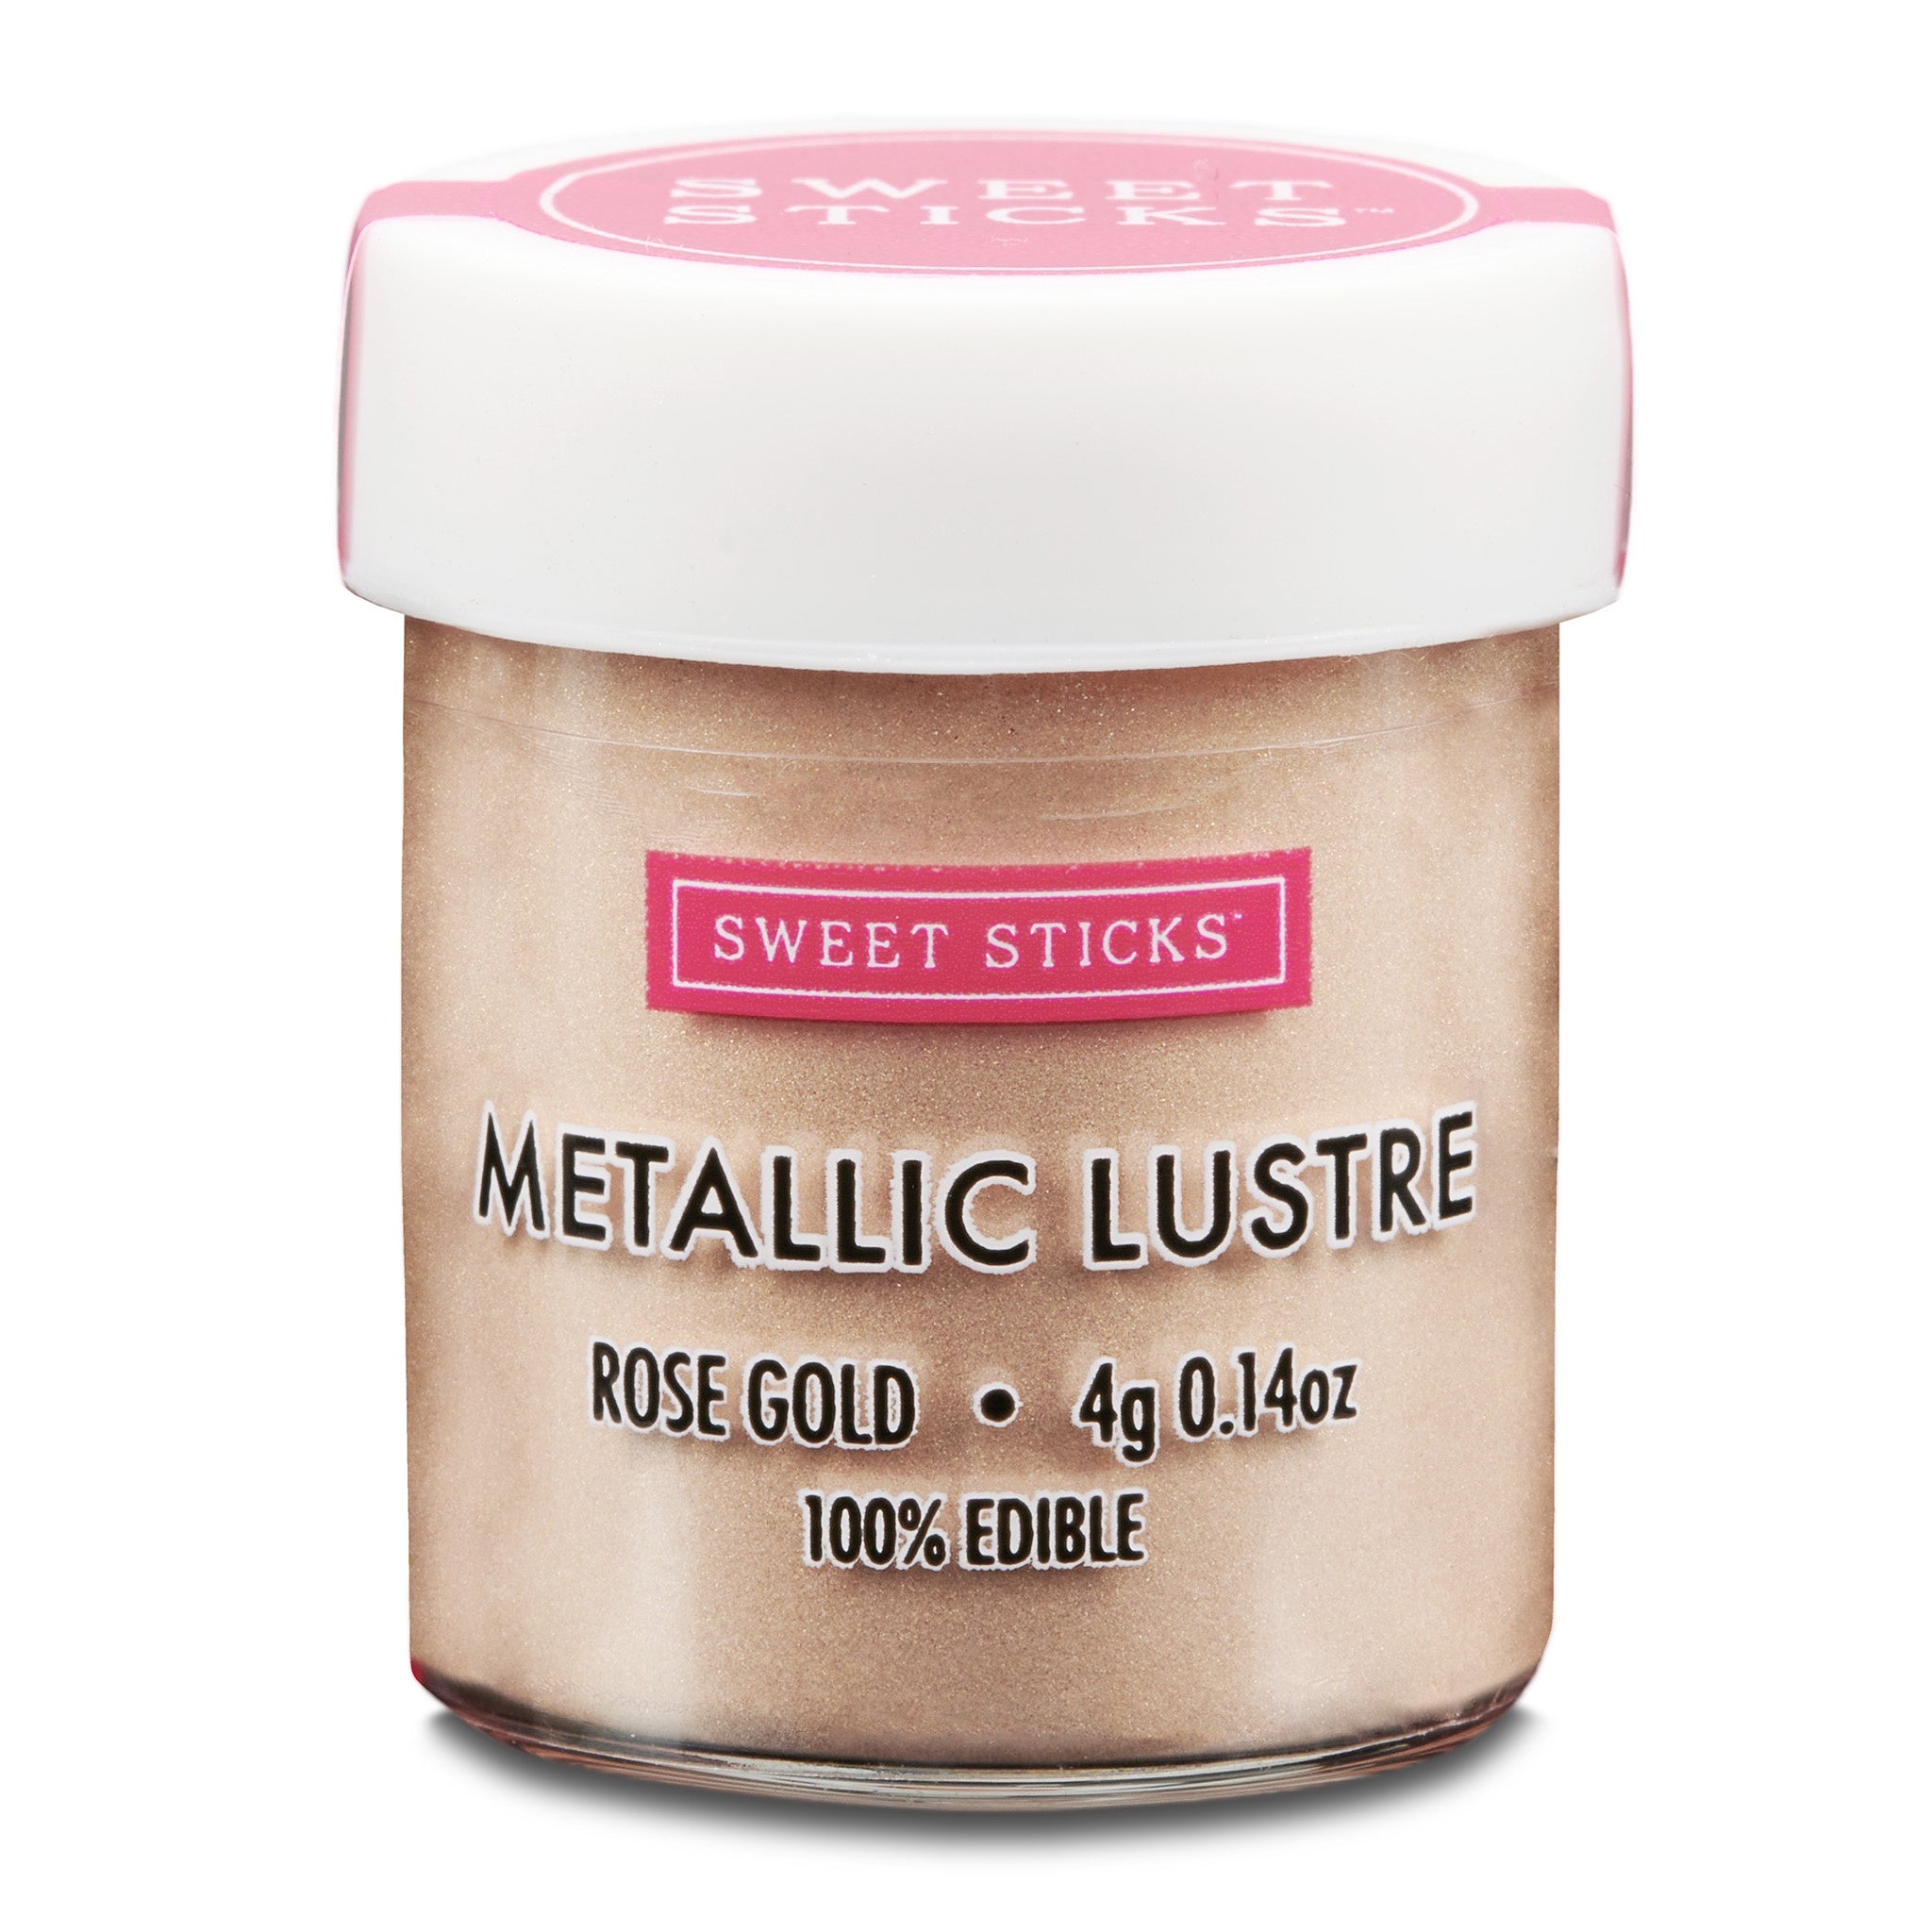 Sweet Sticks Metallic Lustre 4g - Rose Gold